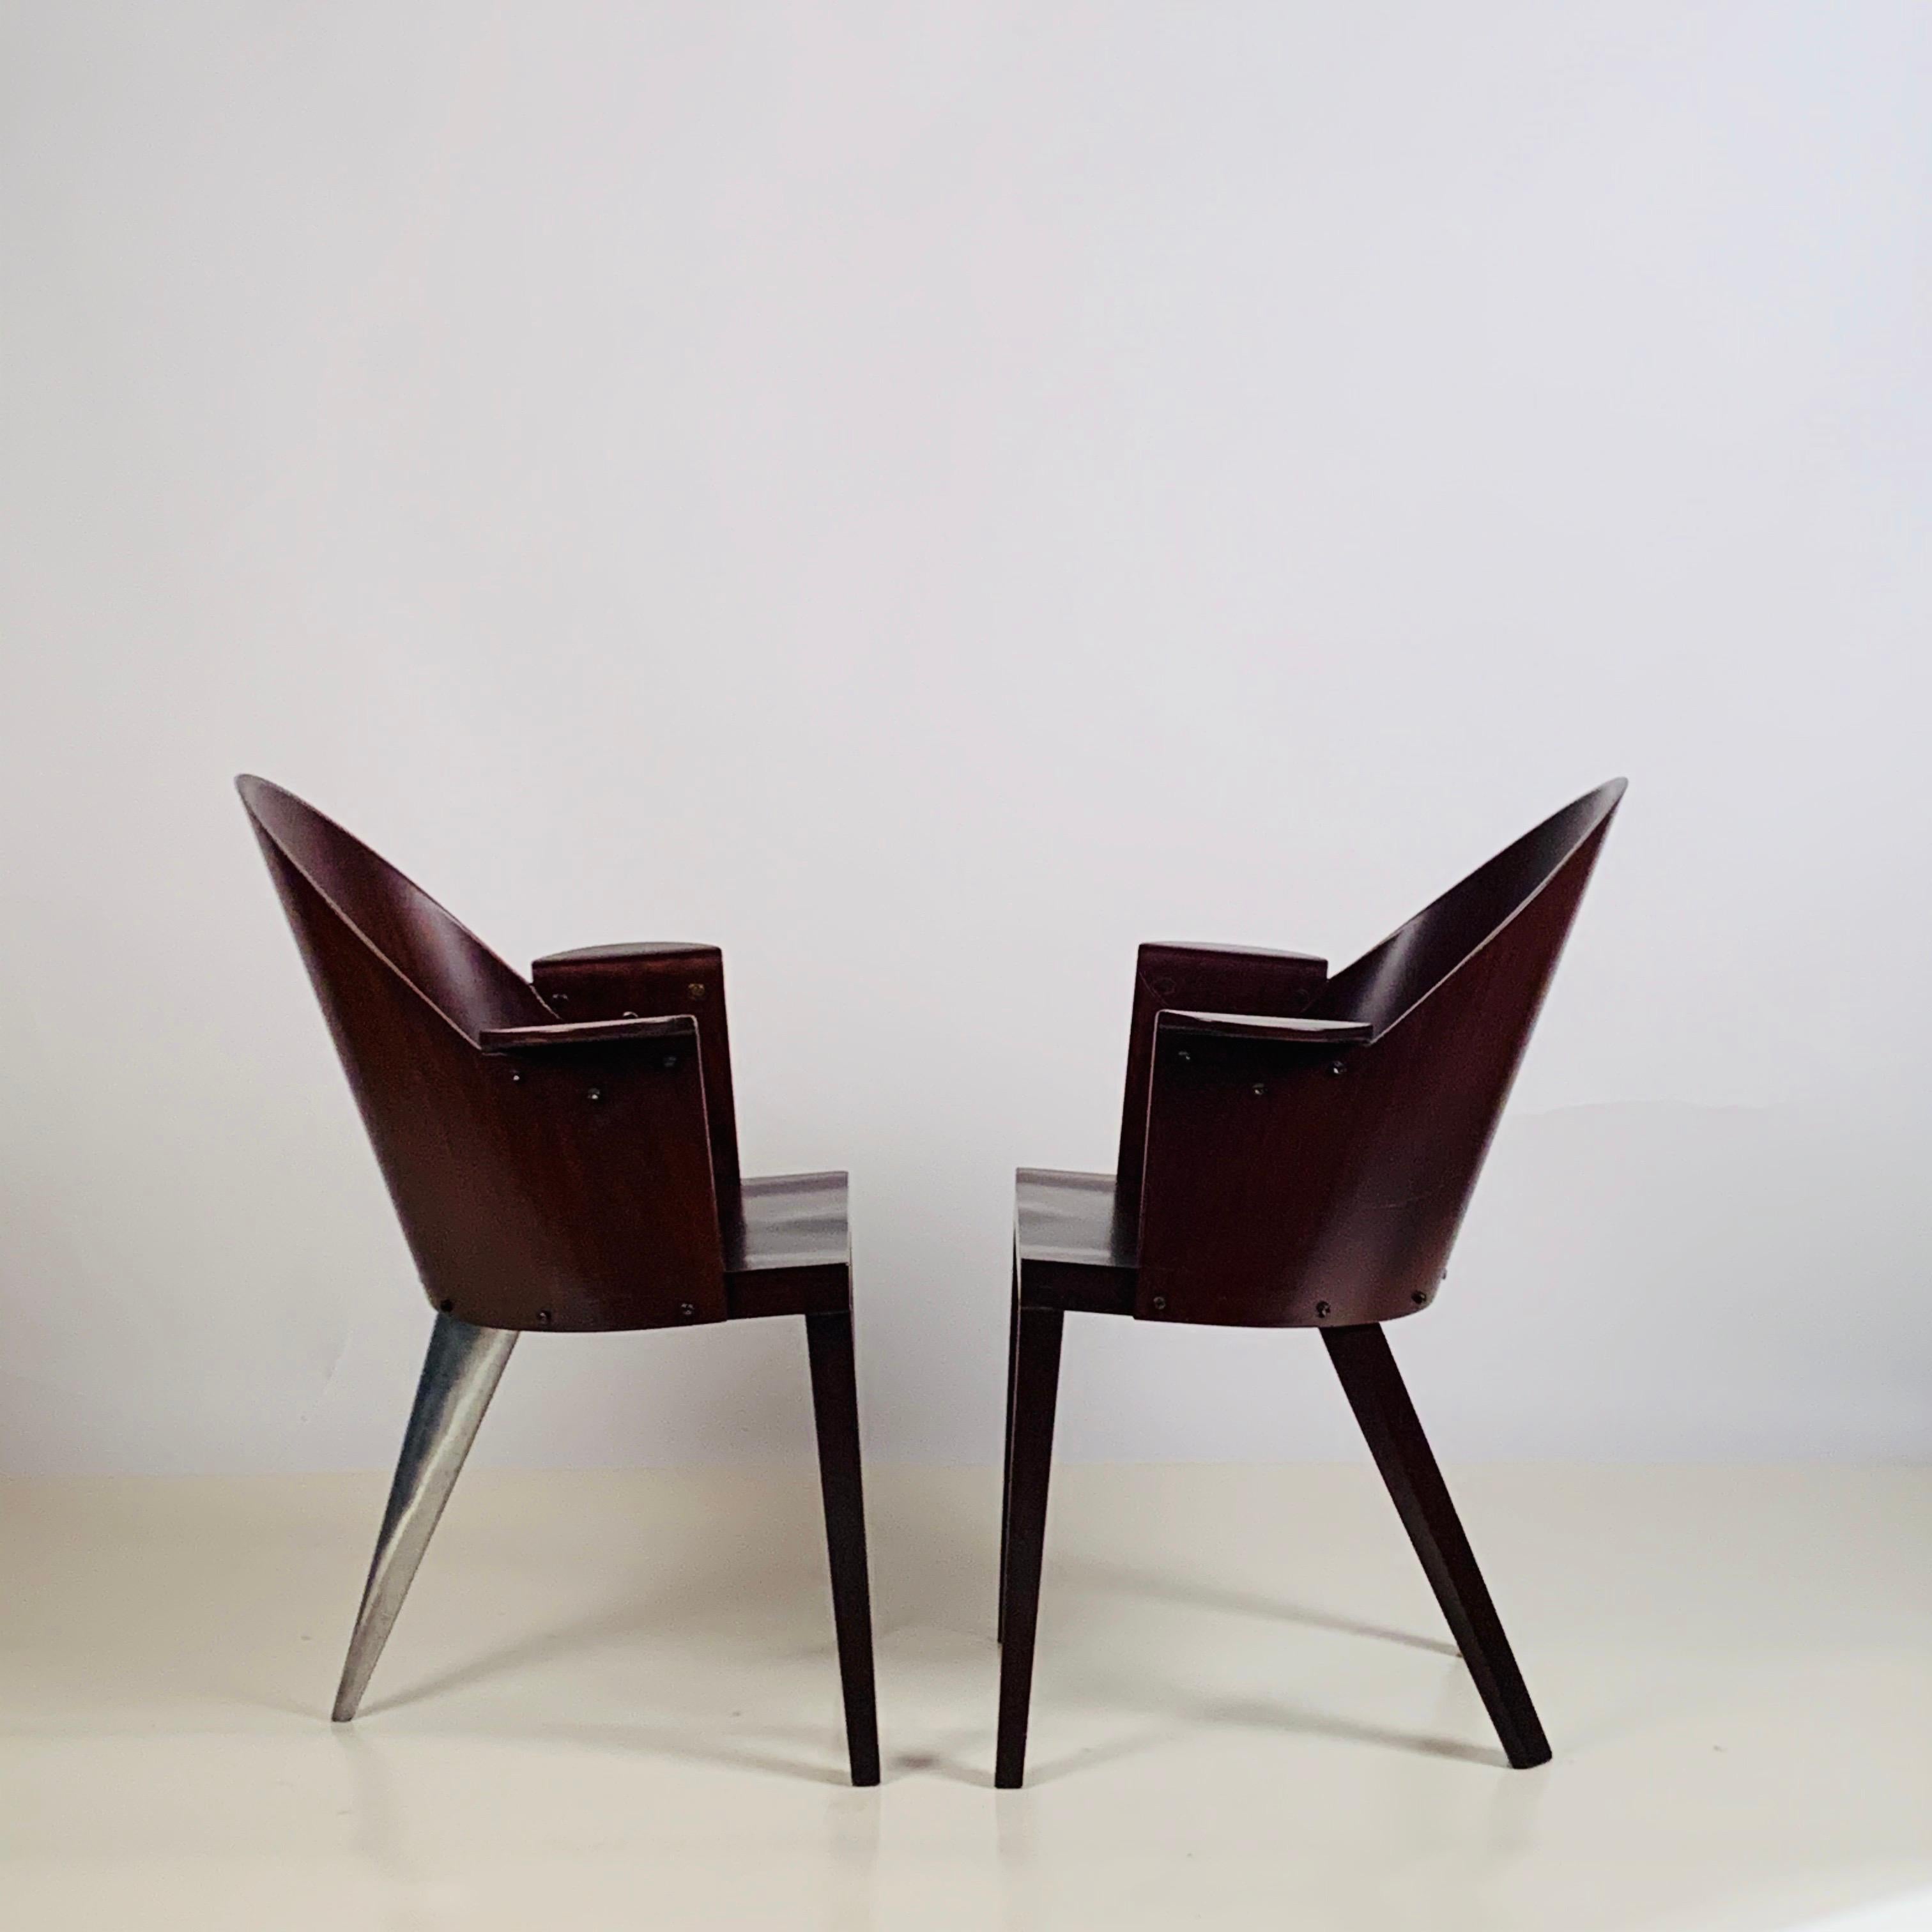 Rare paire de fauteuils Philippe Starck provenant de l'hôtel Royalton, NYC. Étiquette originale. L'hôtel Royalton est situé juste à l'est de Times Square à Manhattan, au 44 West 44th Street. Il a été le premier hôtel conçu par Philippe Starck et a